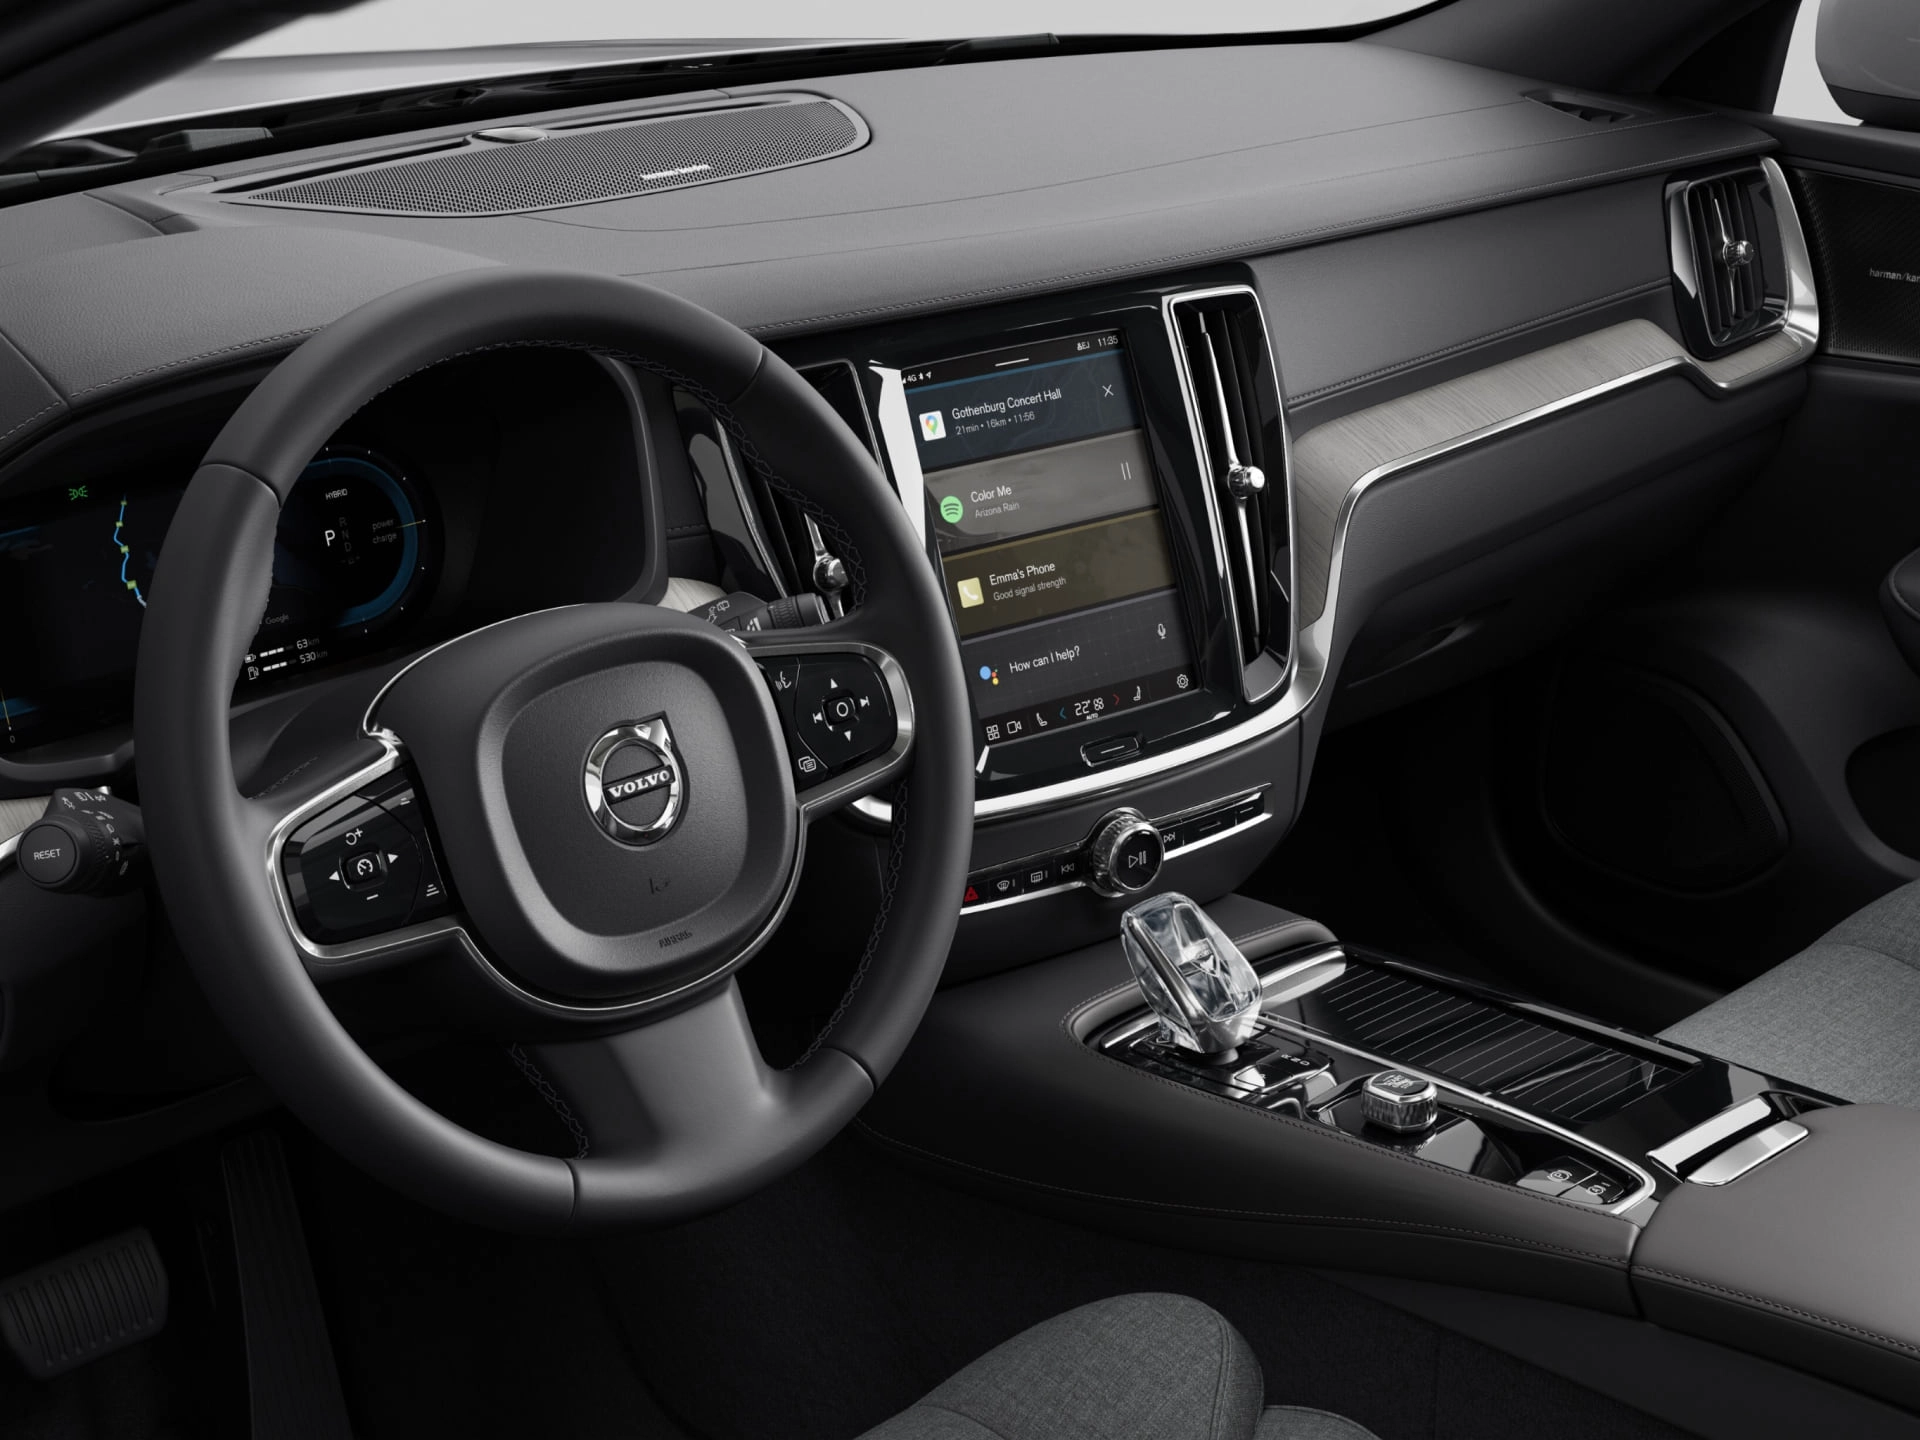 Cận cảnh ghế của người lái, vô lăng và màn hình hiển thị trung tâm trong xe Sedan của Volvo.